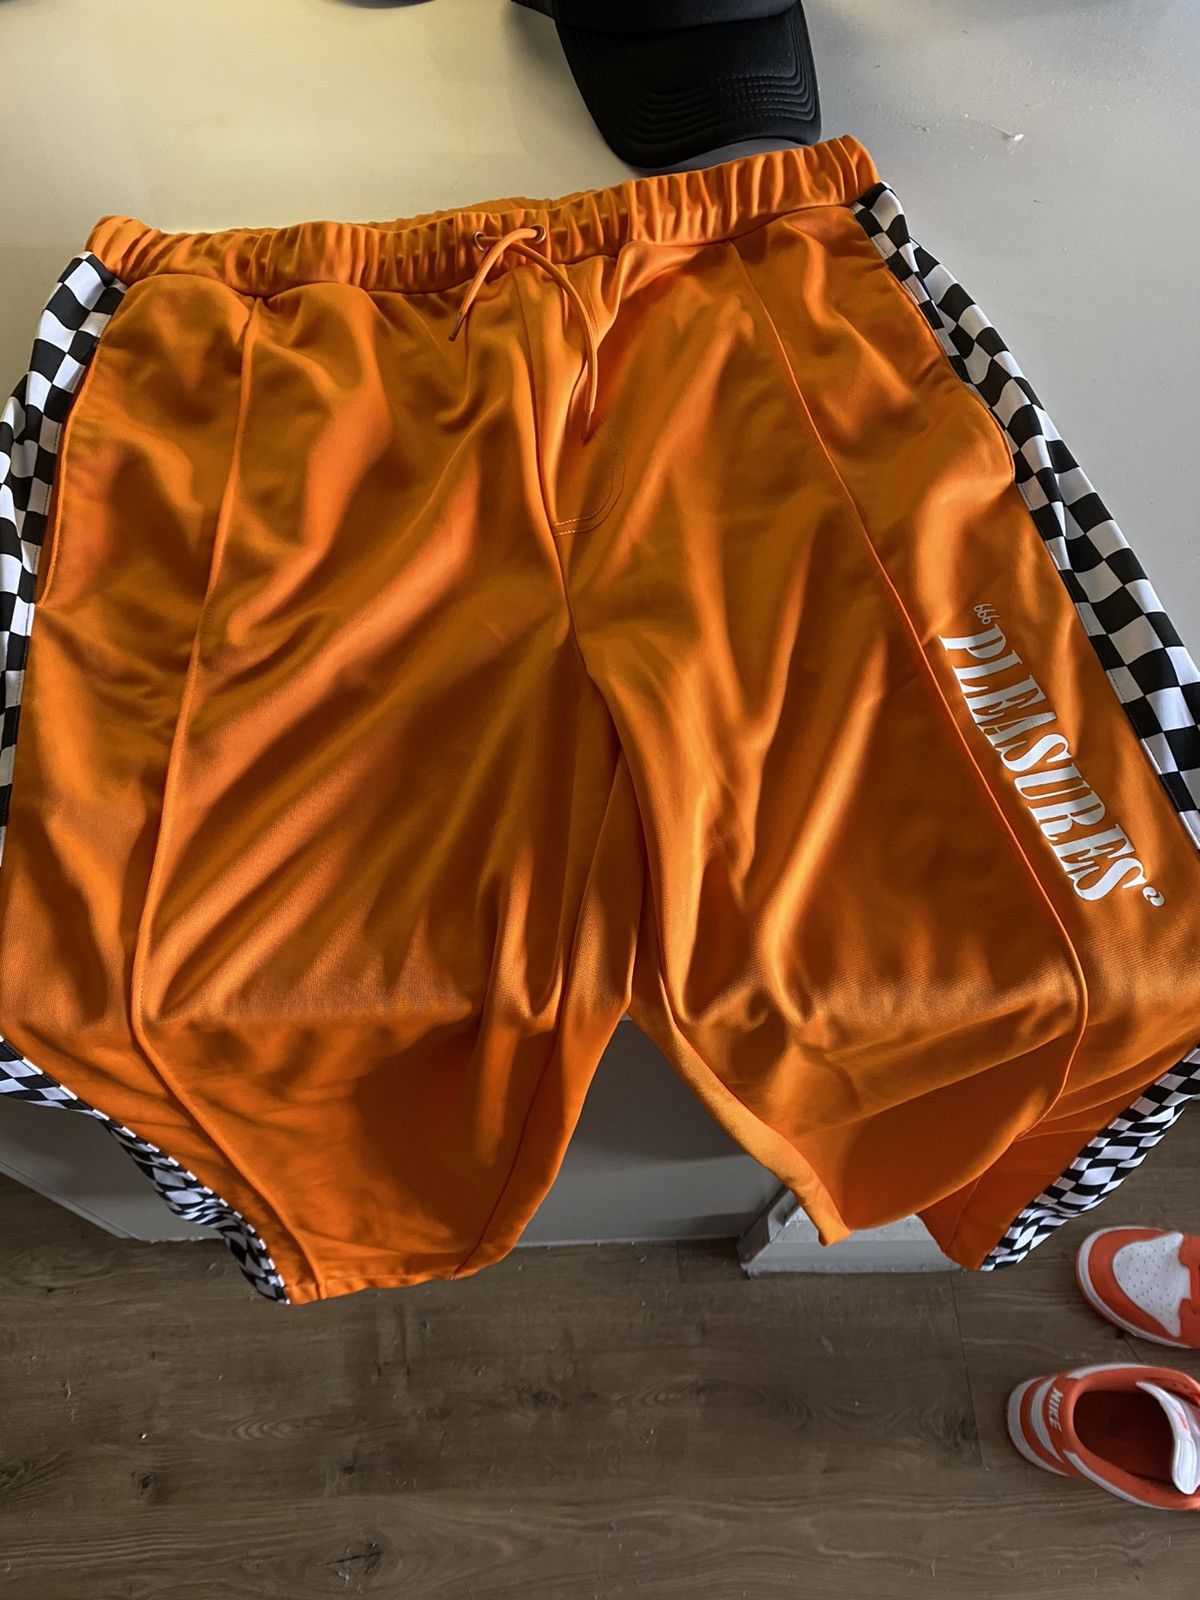 PLEASURES Checkered Track Pants - Orange